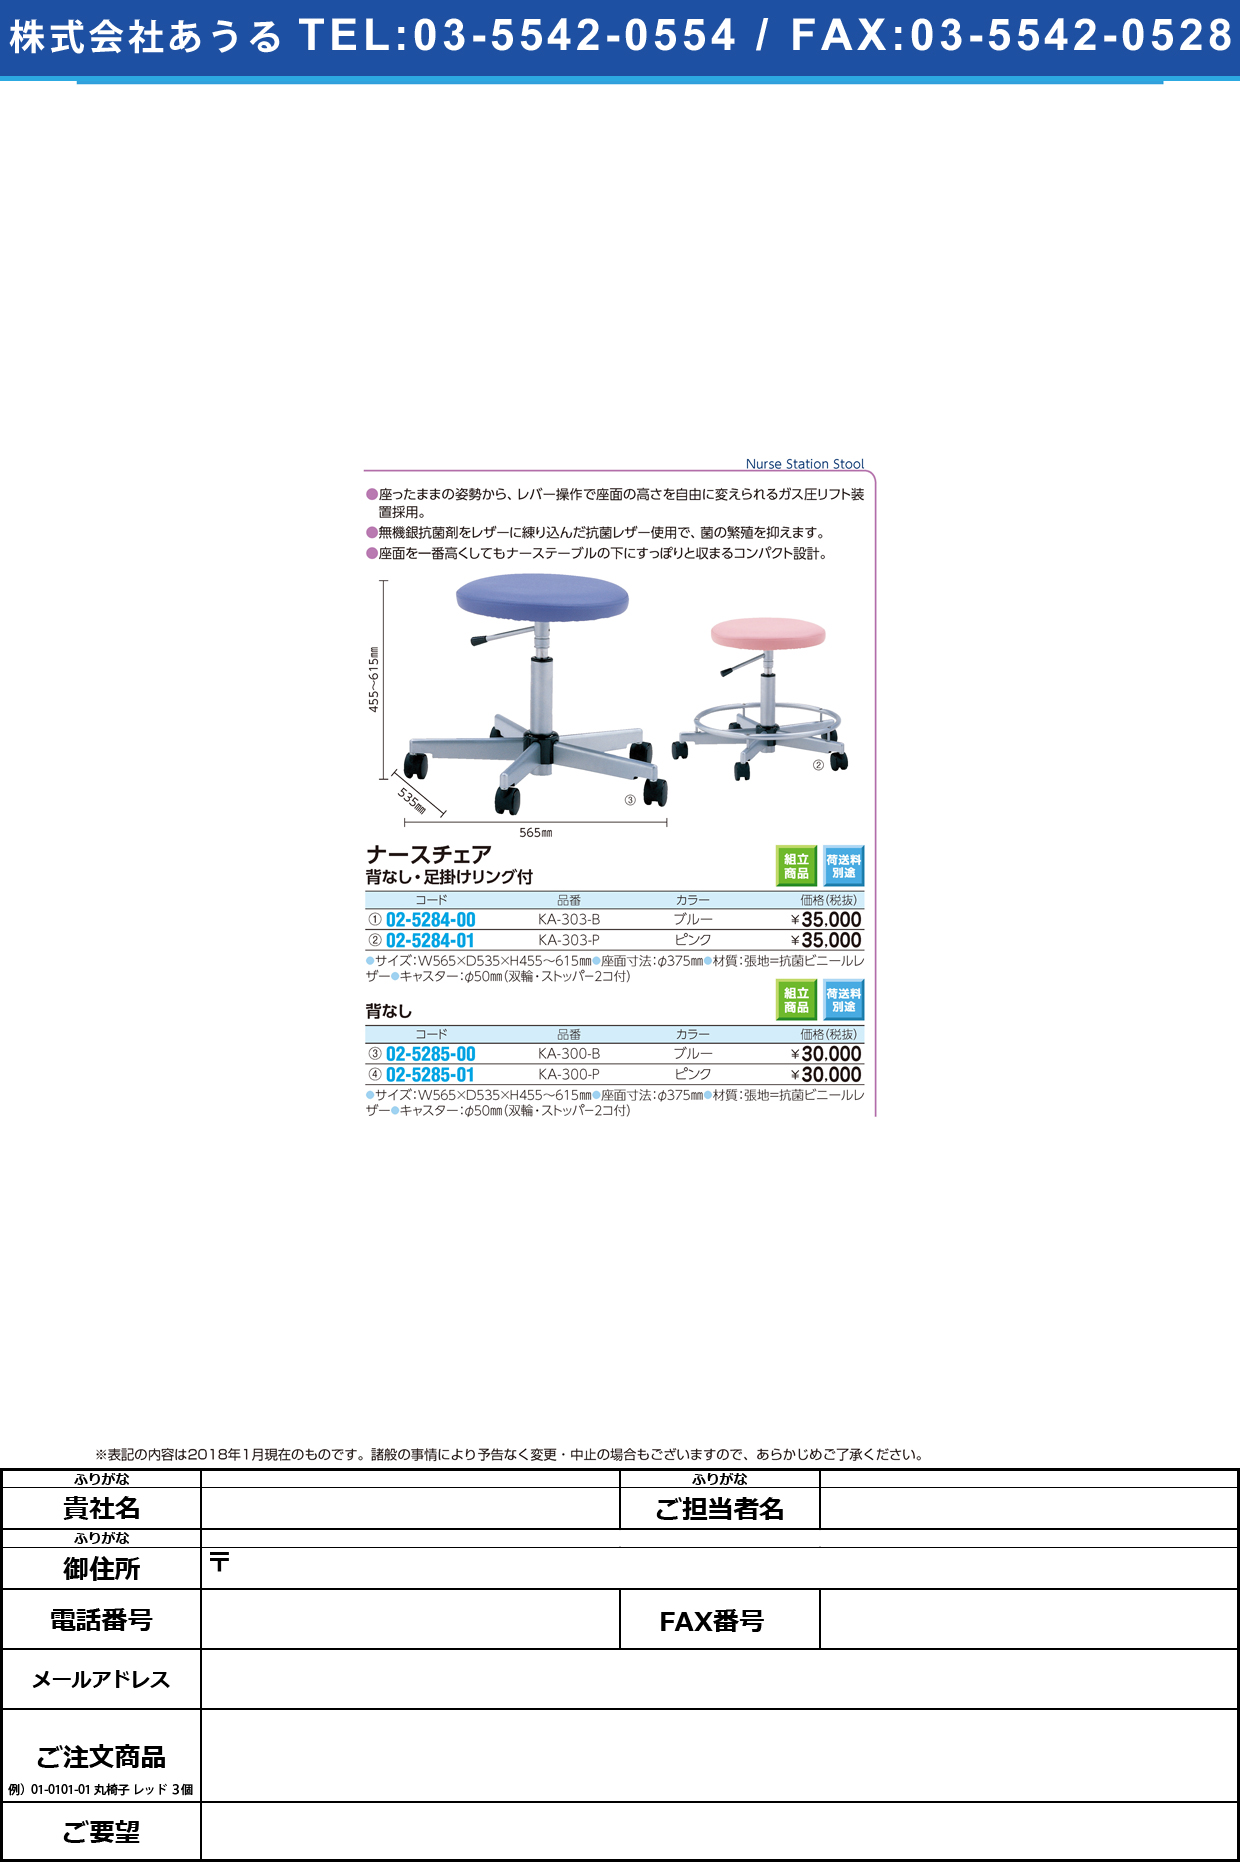 (02-5285-01)ナースステーションチェア KA-300-P(ﾋﾟﾝｸ) KA300P(ケルン)【1台単位】【2018年カタログ商品】